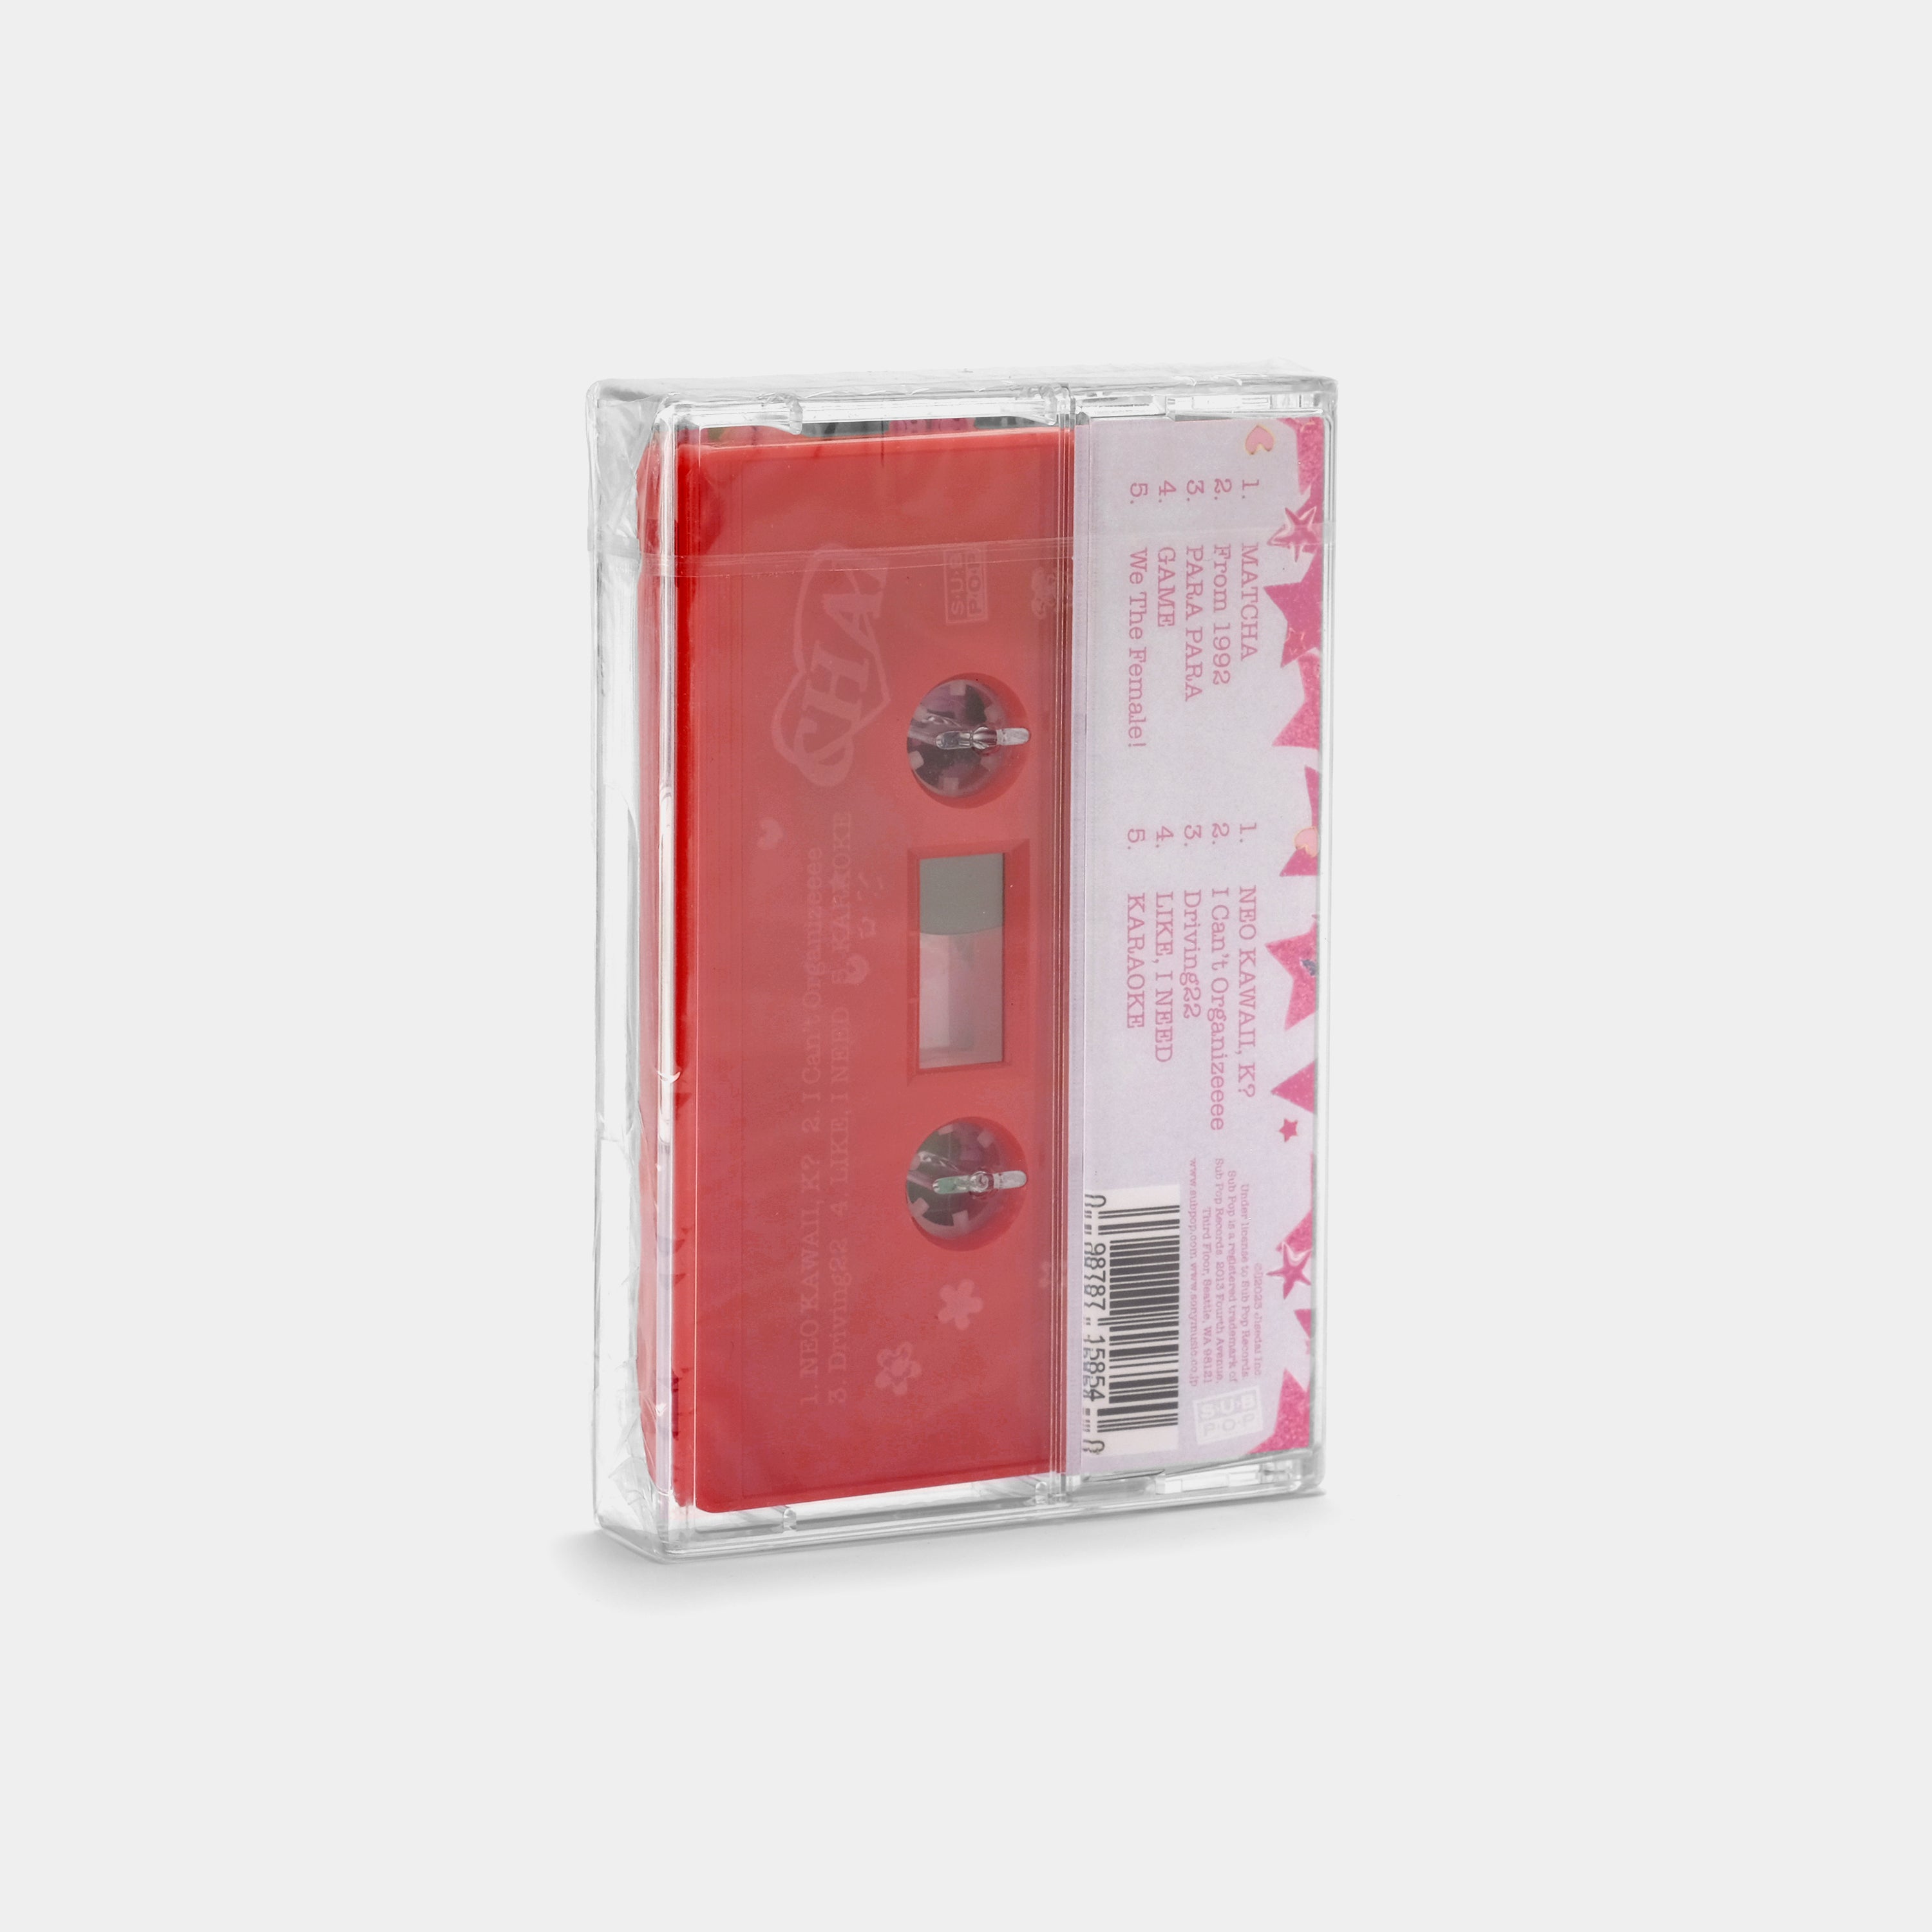 CHAI - CHAI Cassette Tape